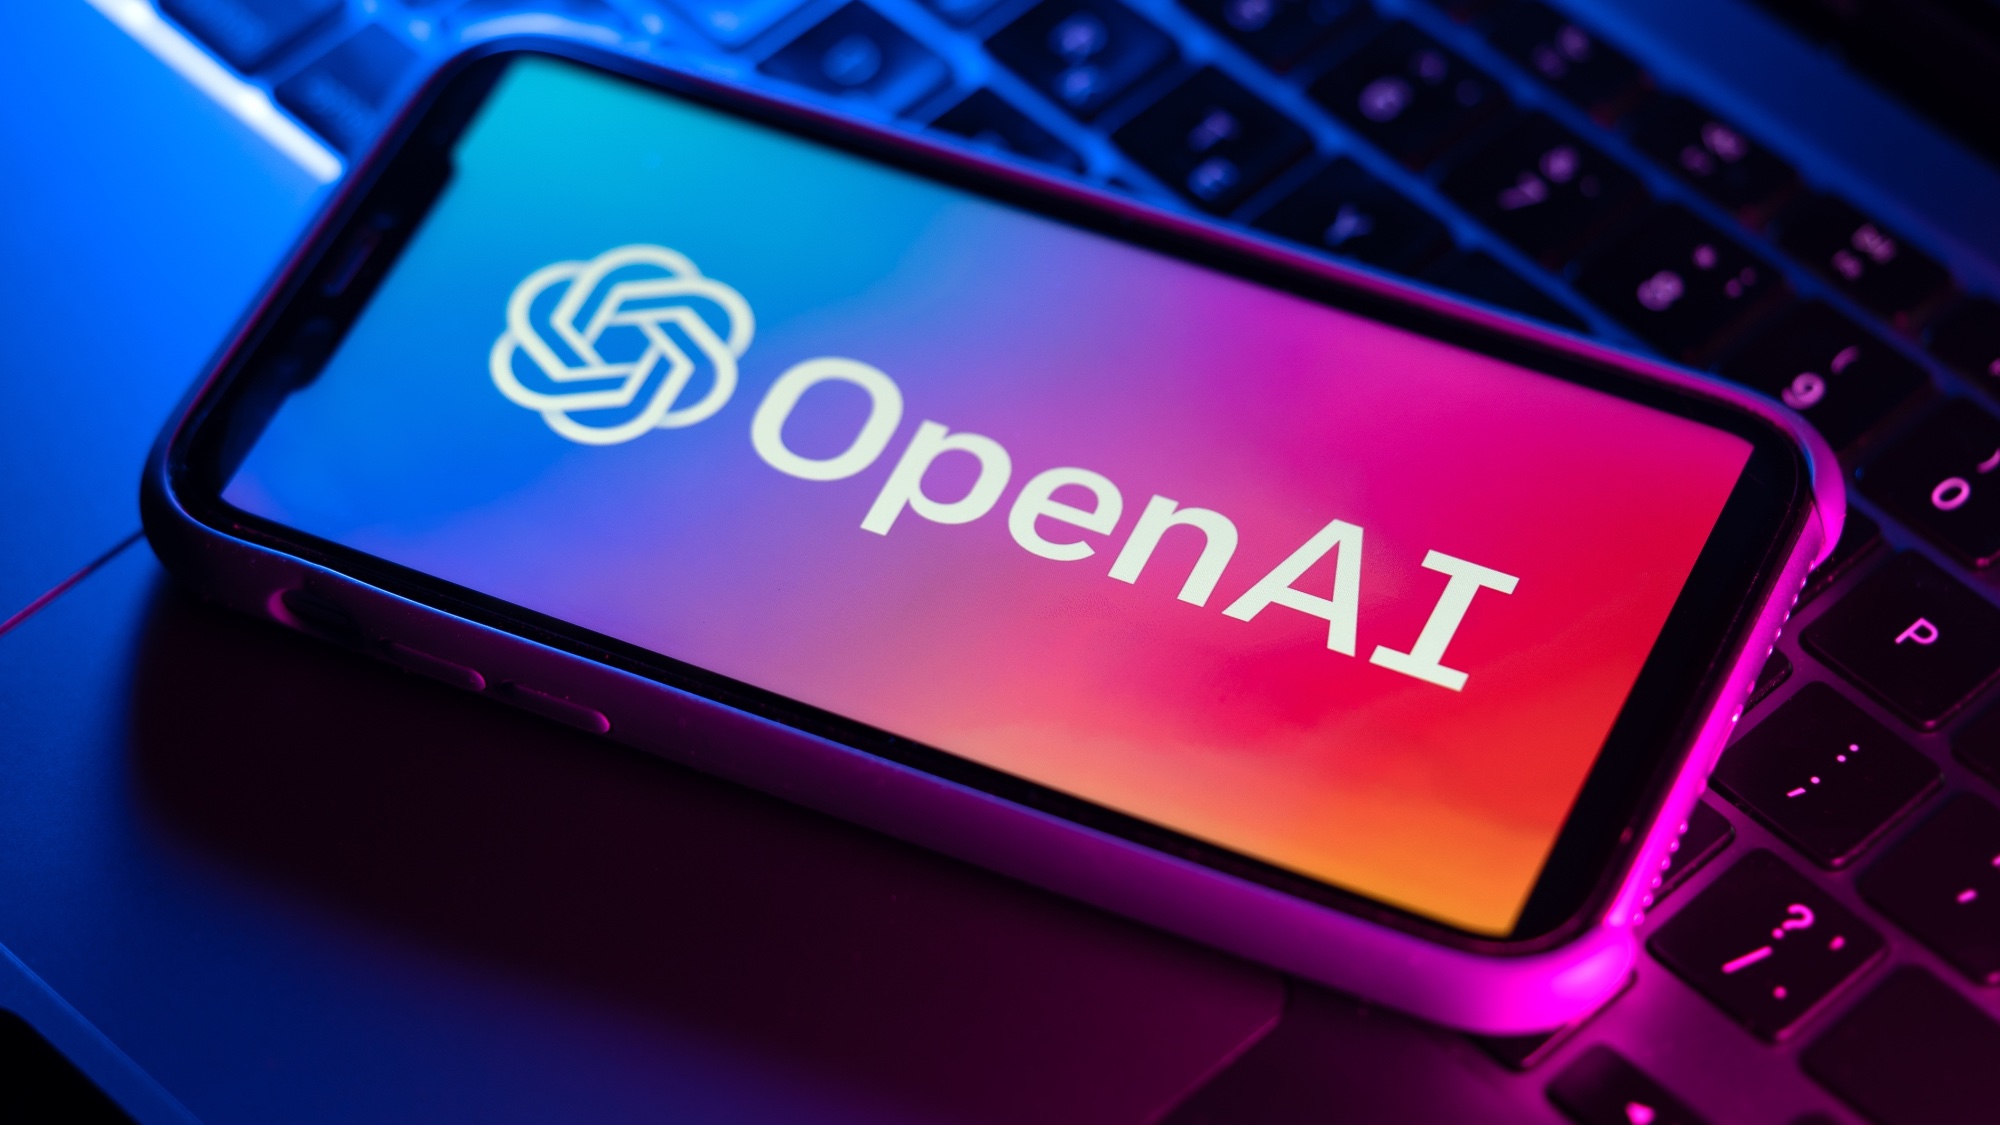 Το λογότυπο OpenAI βρίσκεται στο τηλέφωνο πάνω από το πληκτρολόγιο του φορητού υπολογιστή